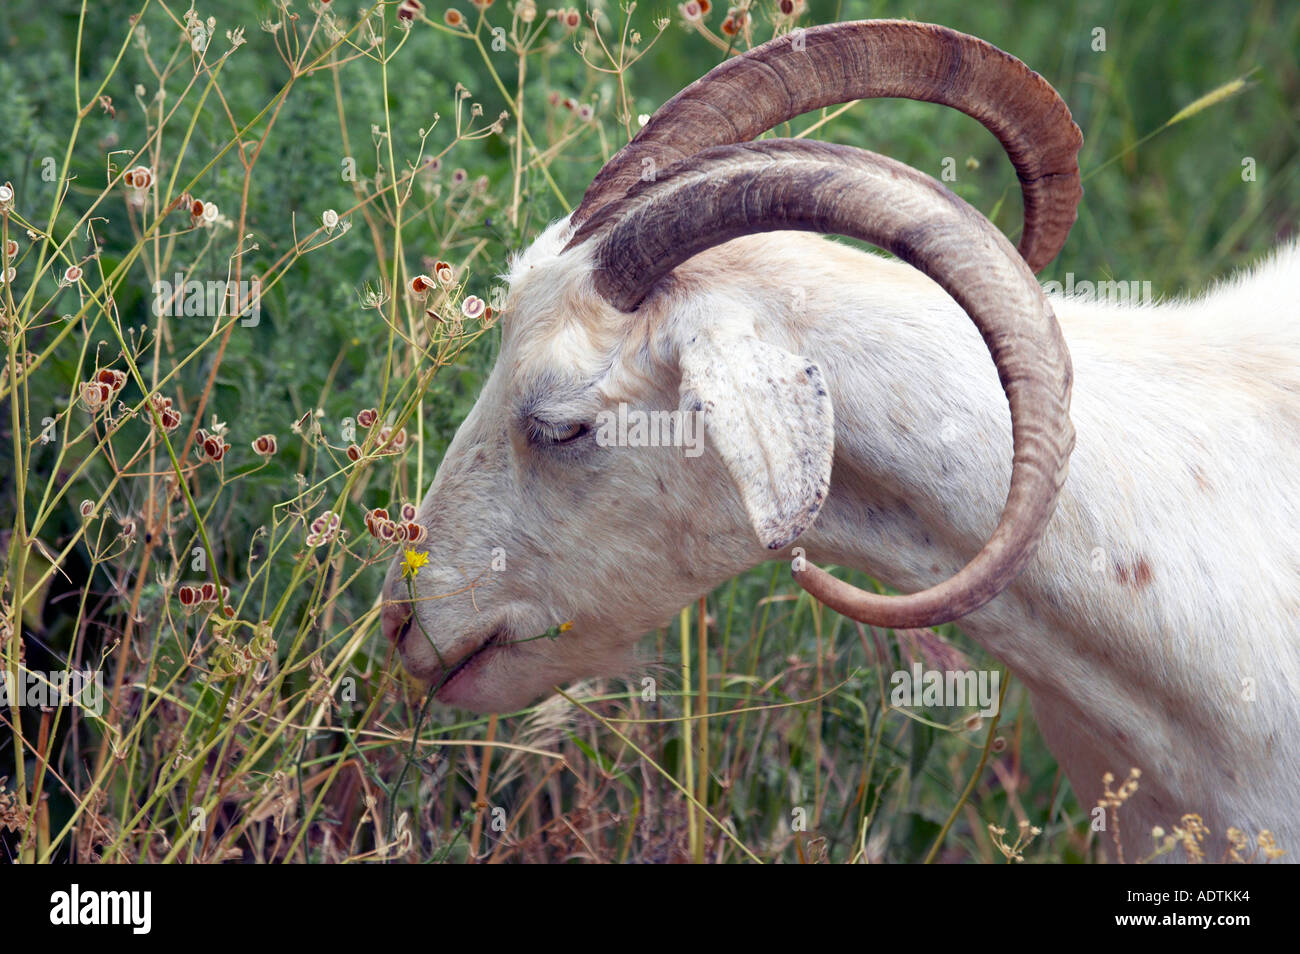 Une chèvre mâchonne entre mauvaises herbes à Corfou Grèce Banque D'Images